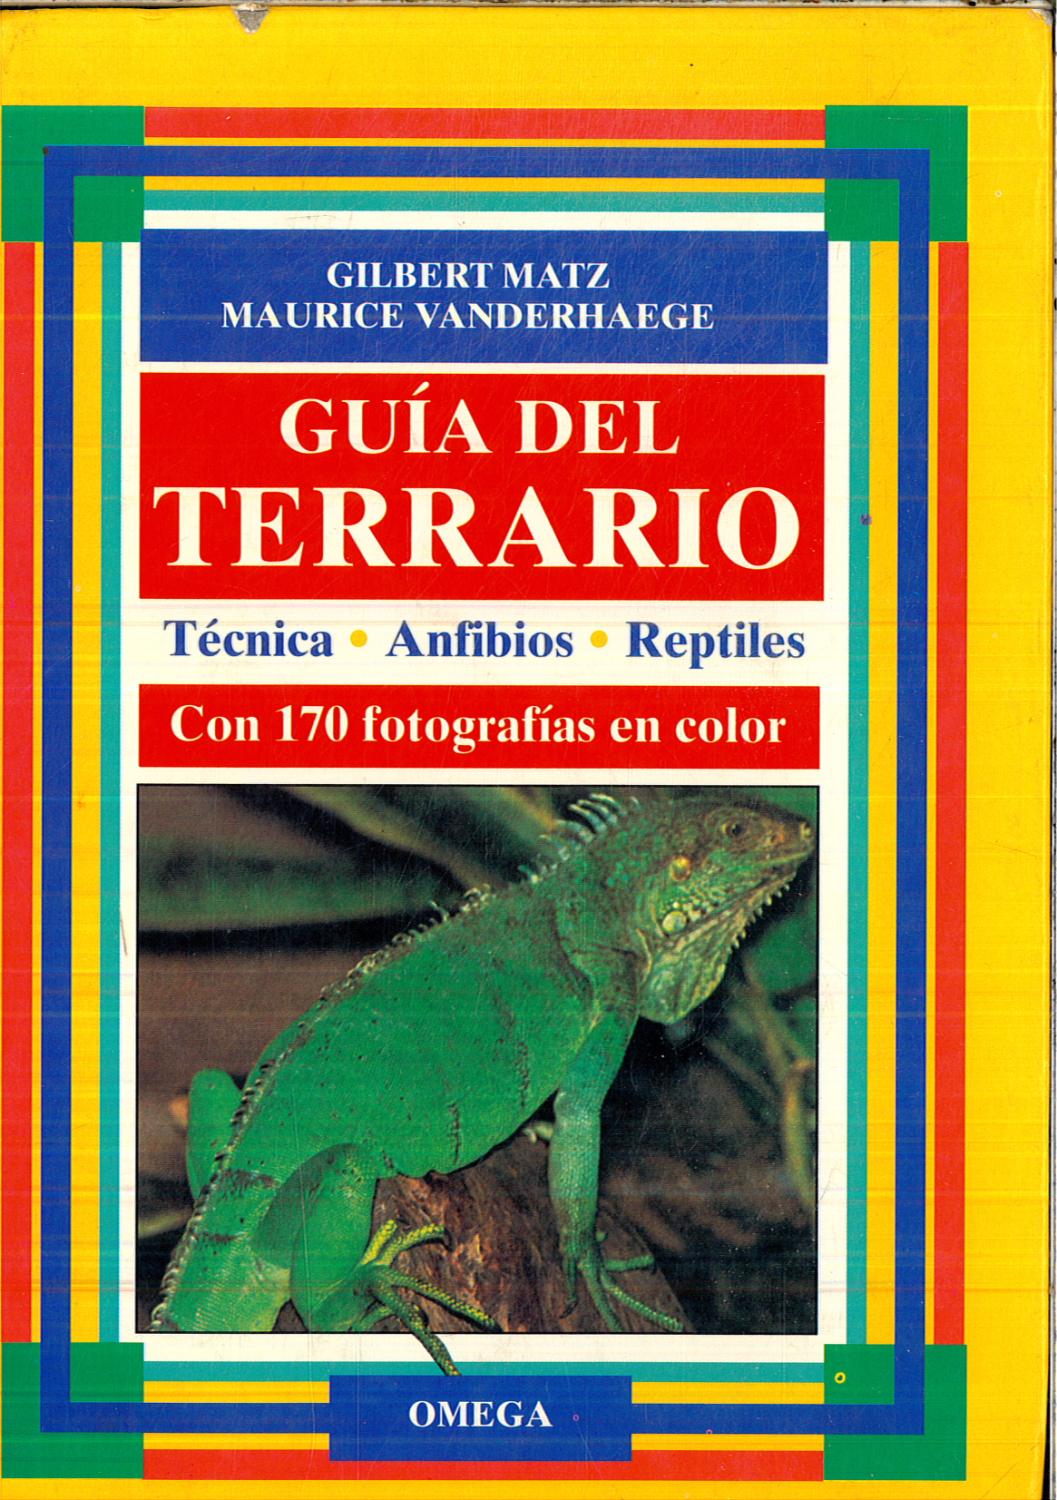 Guía del terrario: técnica, anfibios, reptiles - Matz, Gilbert; Vanderhaege, Maurice